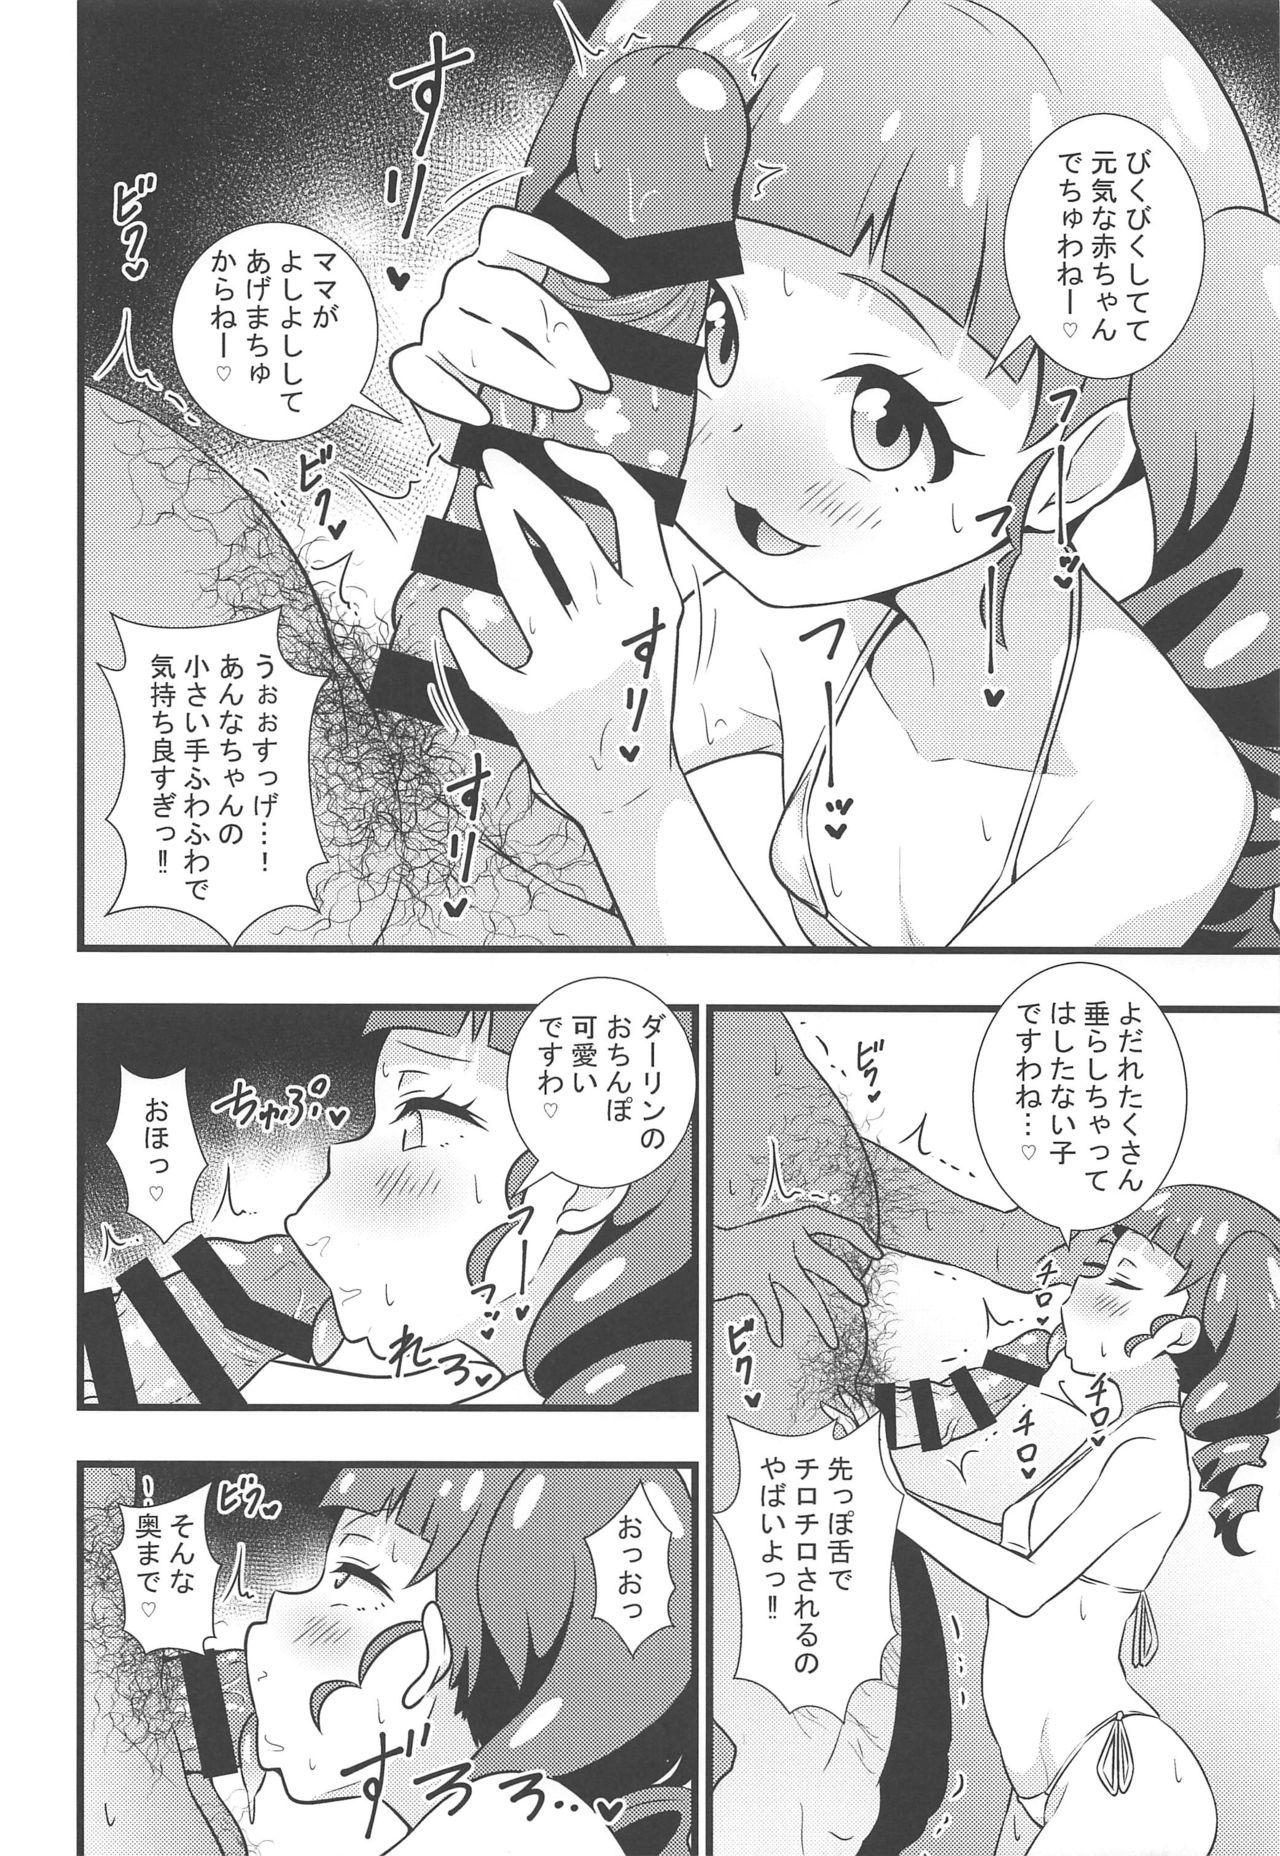 Pau Grande Anna-chan no Hanayome Shugyou - Kiratto pri chan Dyke - Page 5